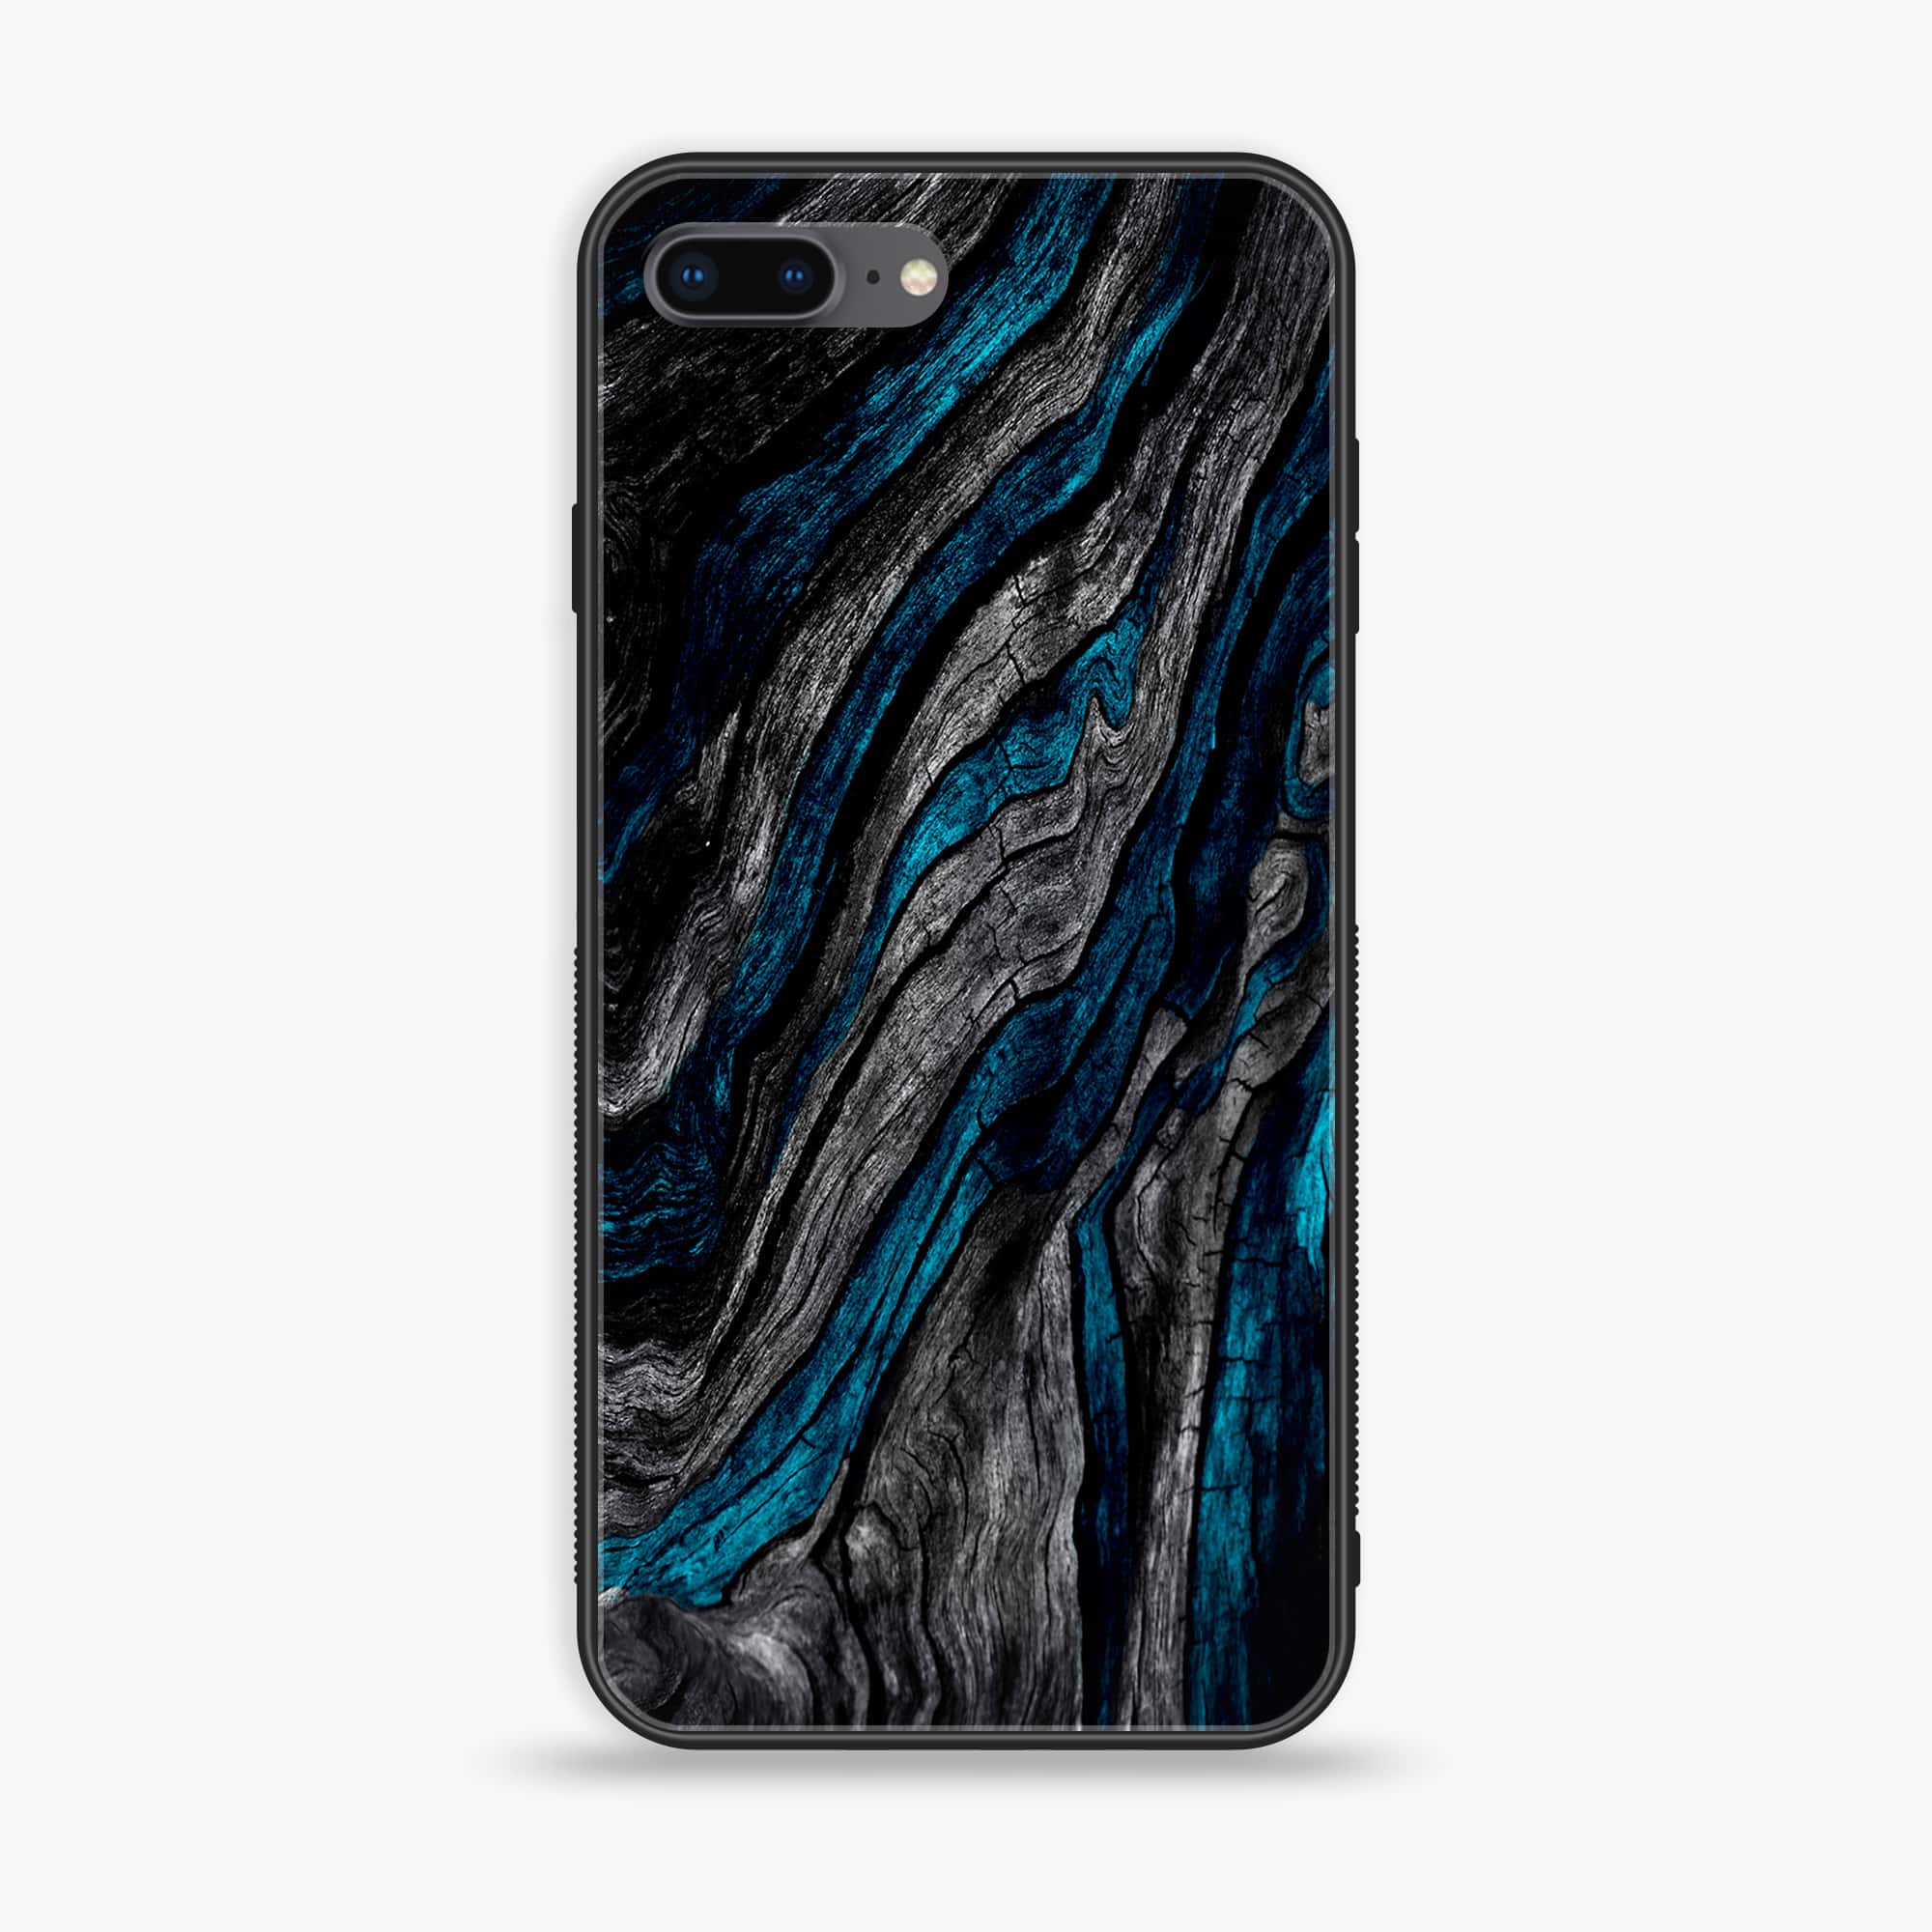 iPhone 7Plus - Liquid Marble Series - Premium Printed Glass soft Bumper shock Proof Case